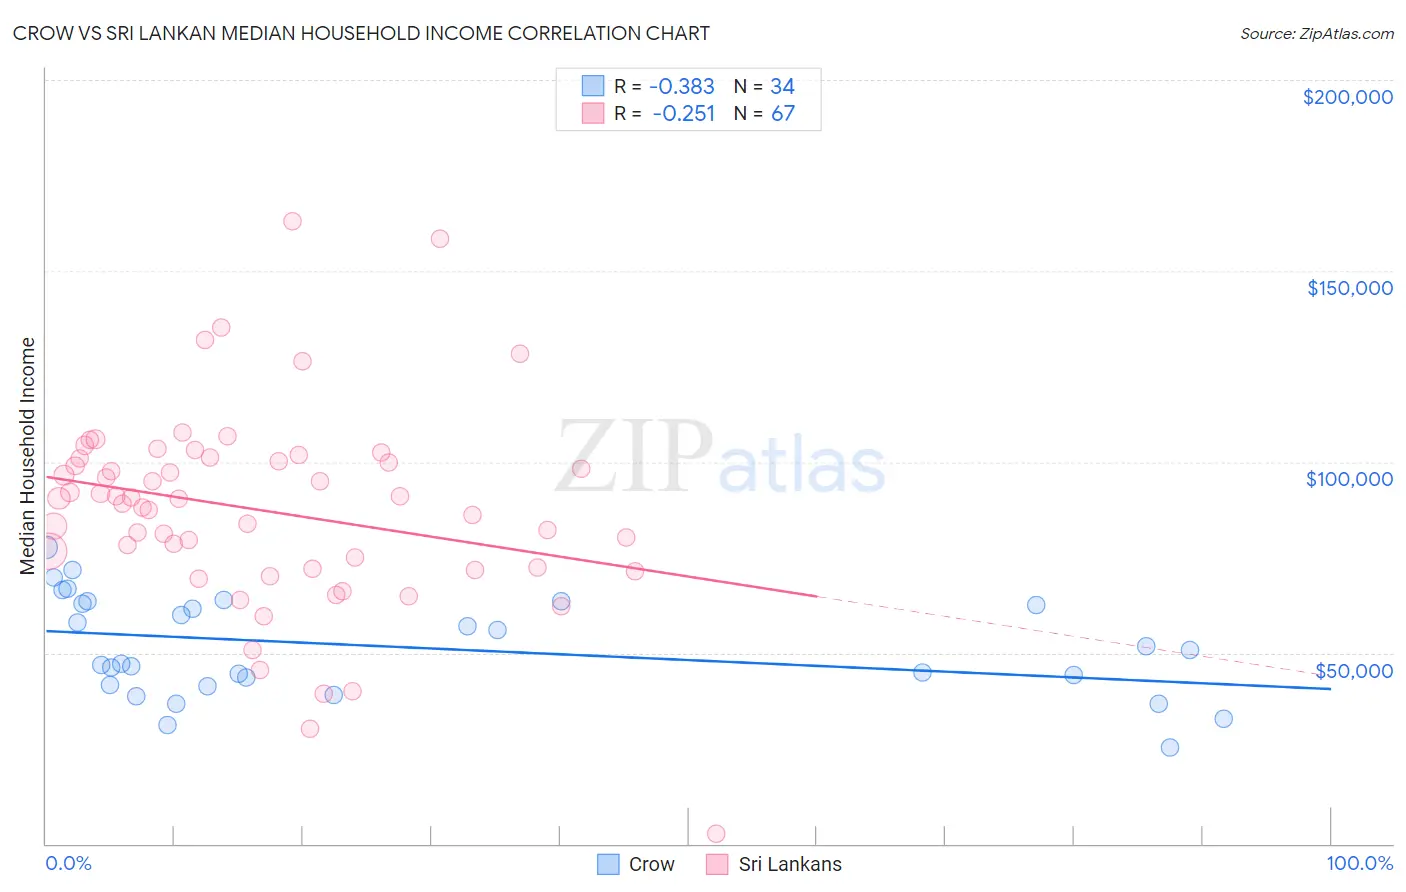 Crow vs Sri Lankan Median Household Income